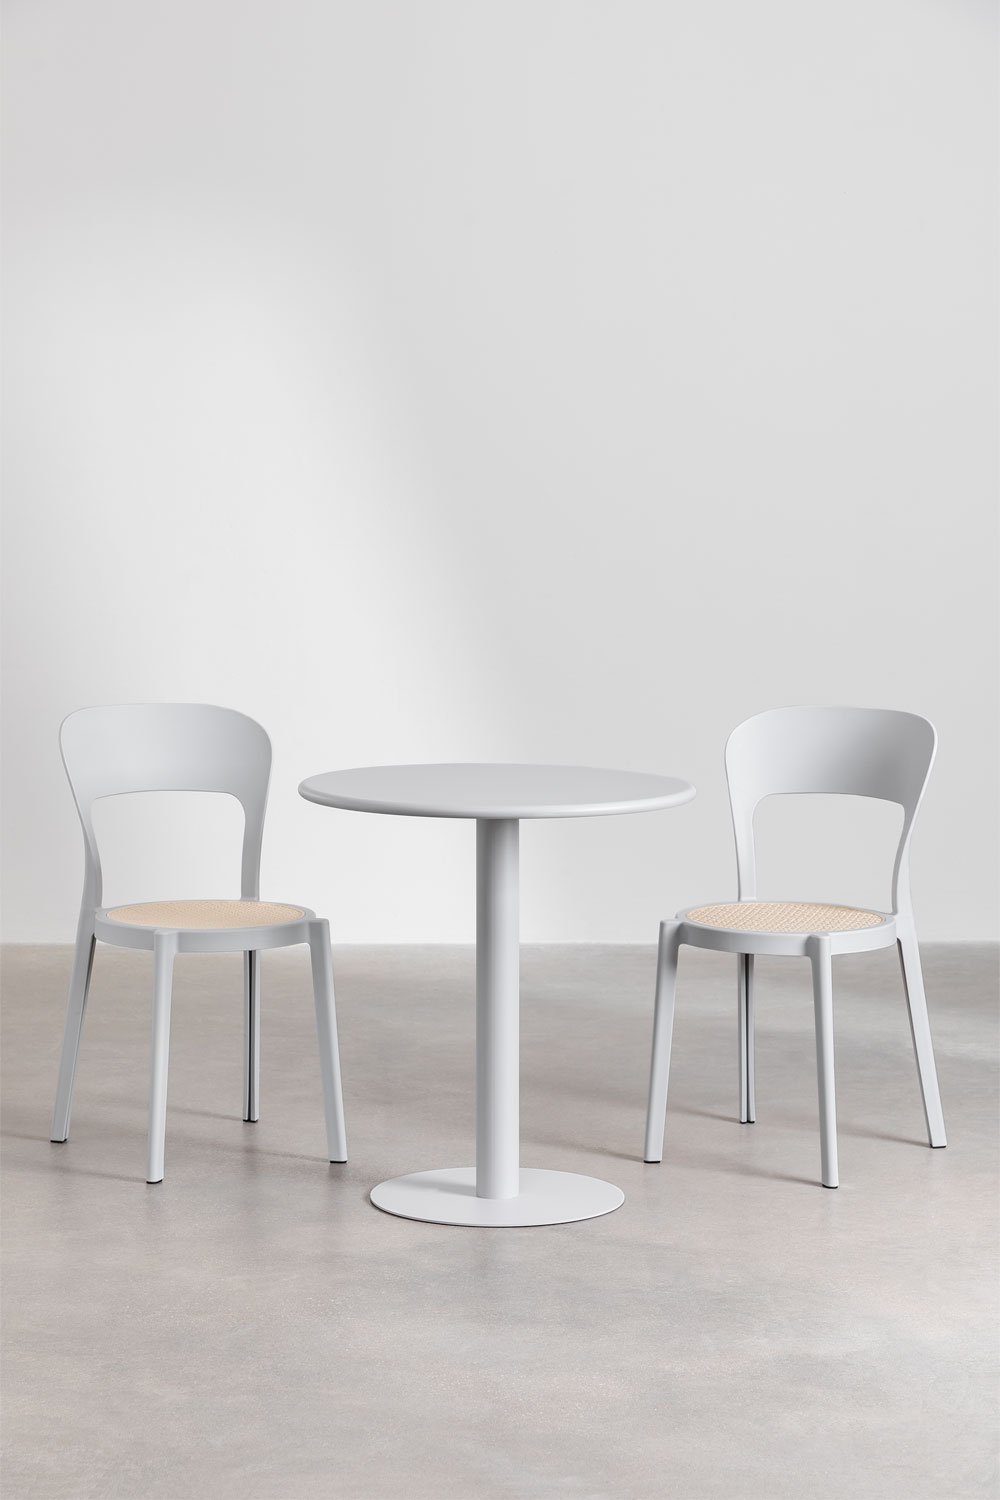 Zestaw okrągłego stołu Mizzi (ø70 cm) i 2 krzesła ogrodowe Odilia, obrazek w galerii 1